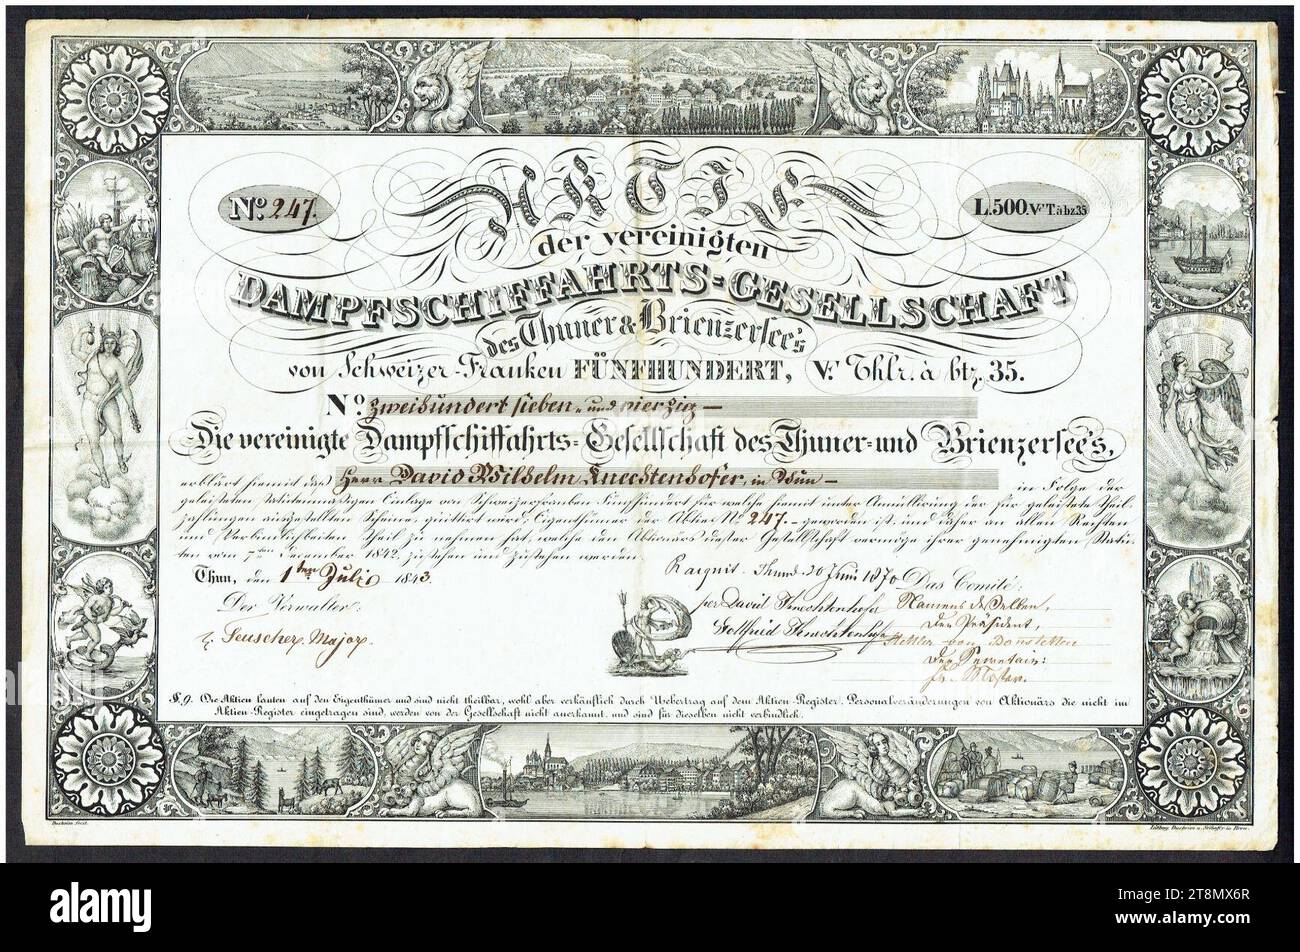 Vereinigte Dampfschiffahrts-Gesellschaft 1843. Stockfoto